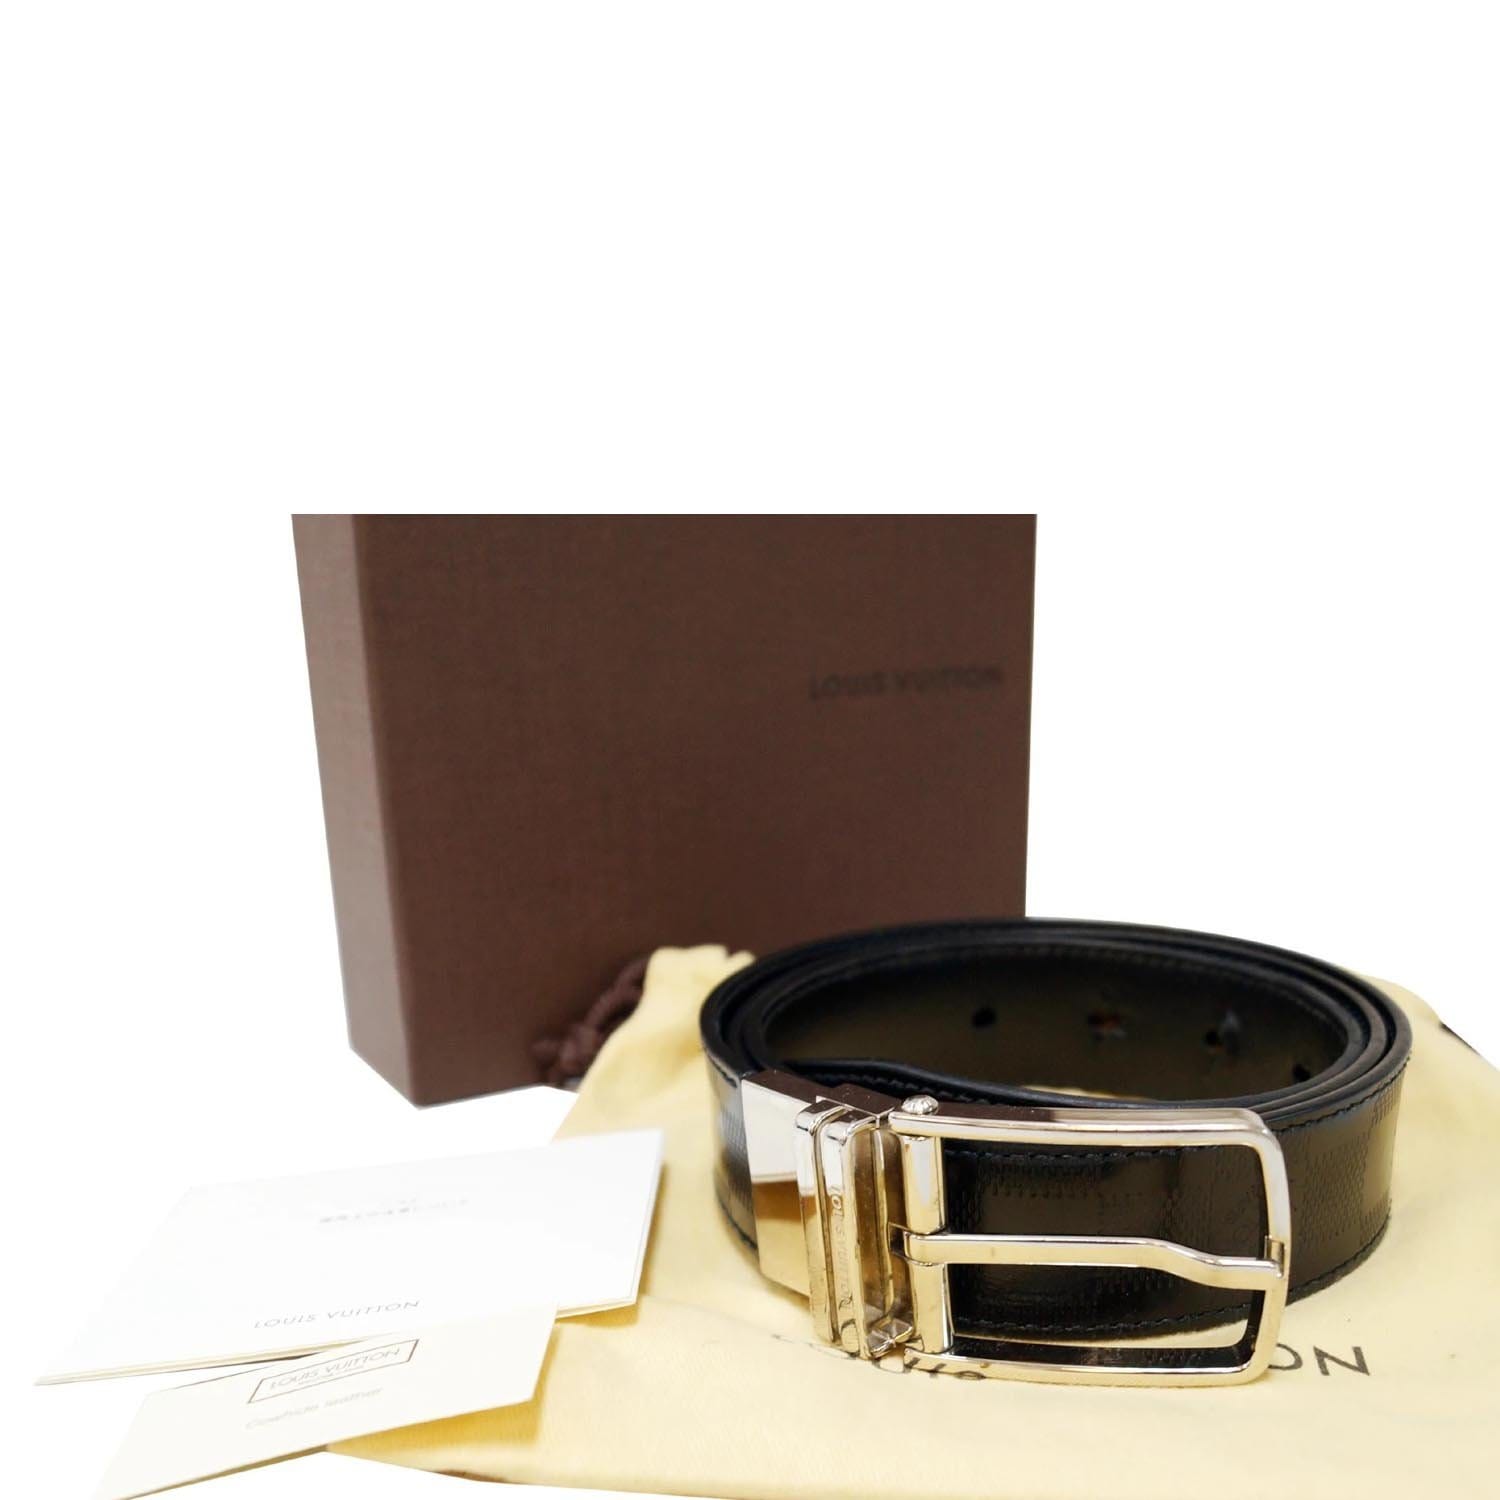 Louis Vuitton Damier Graphite Canvas Logo Buckle Belt Size 95/38